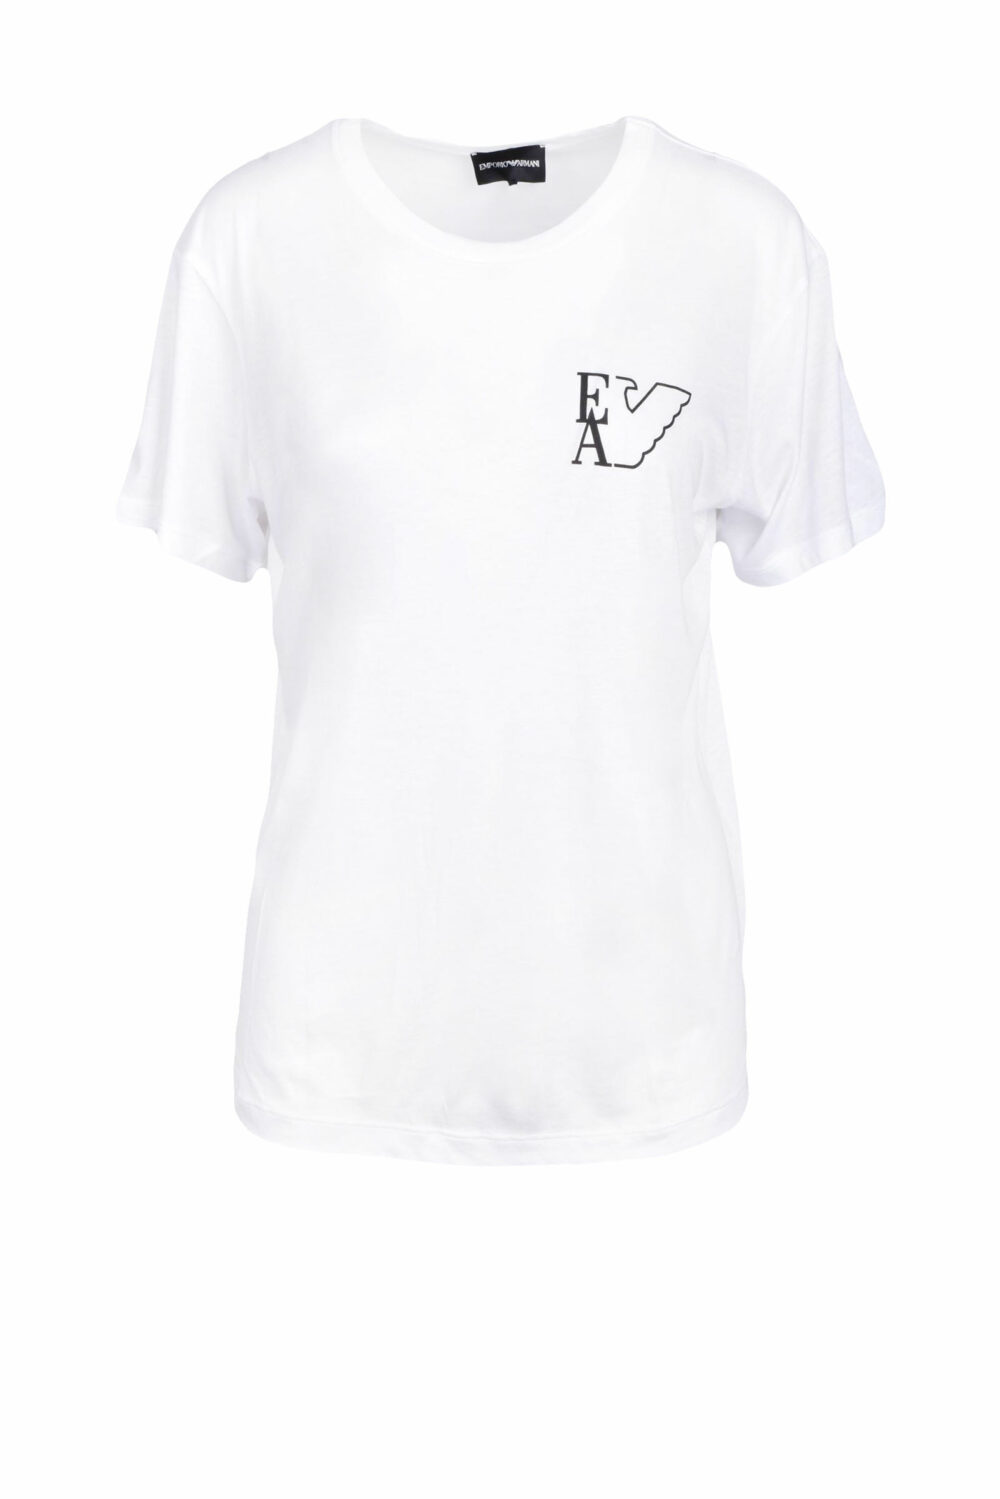 T-shirt Emporio Armani Bianco - Foto 1